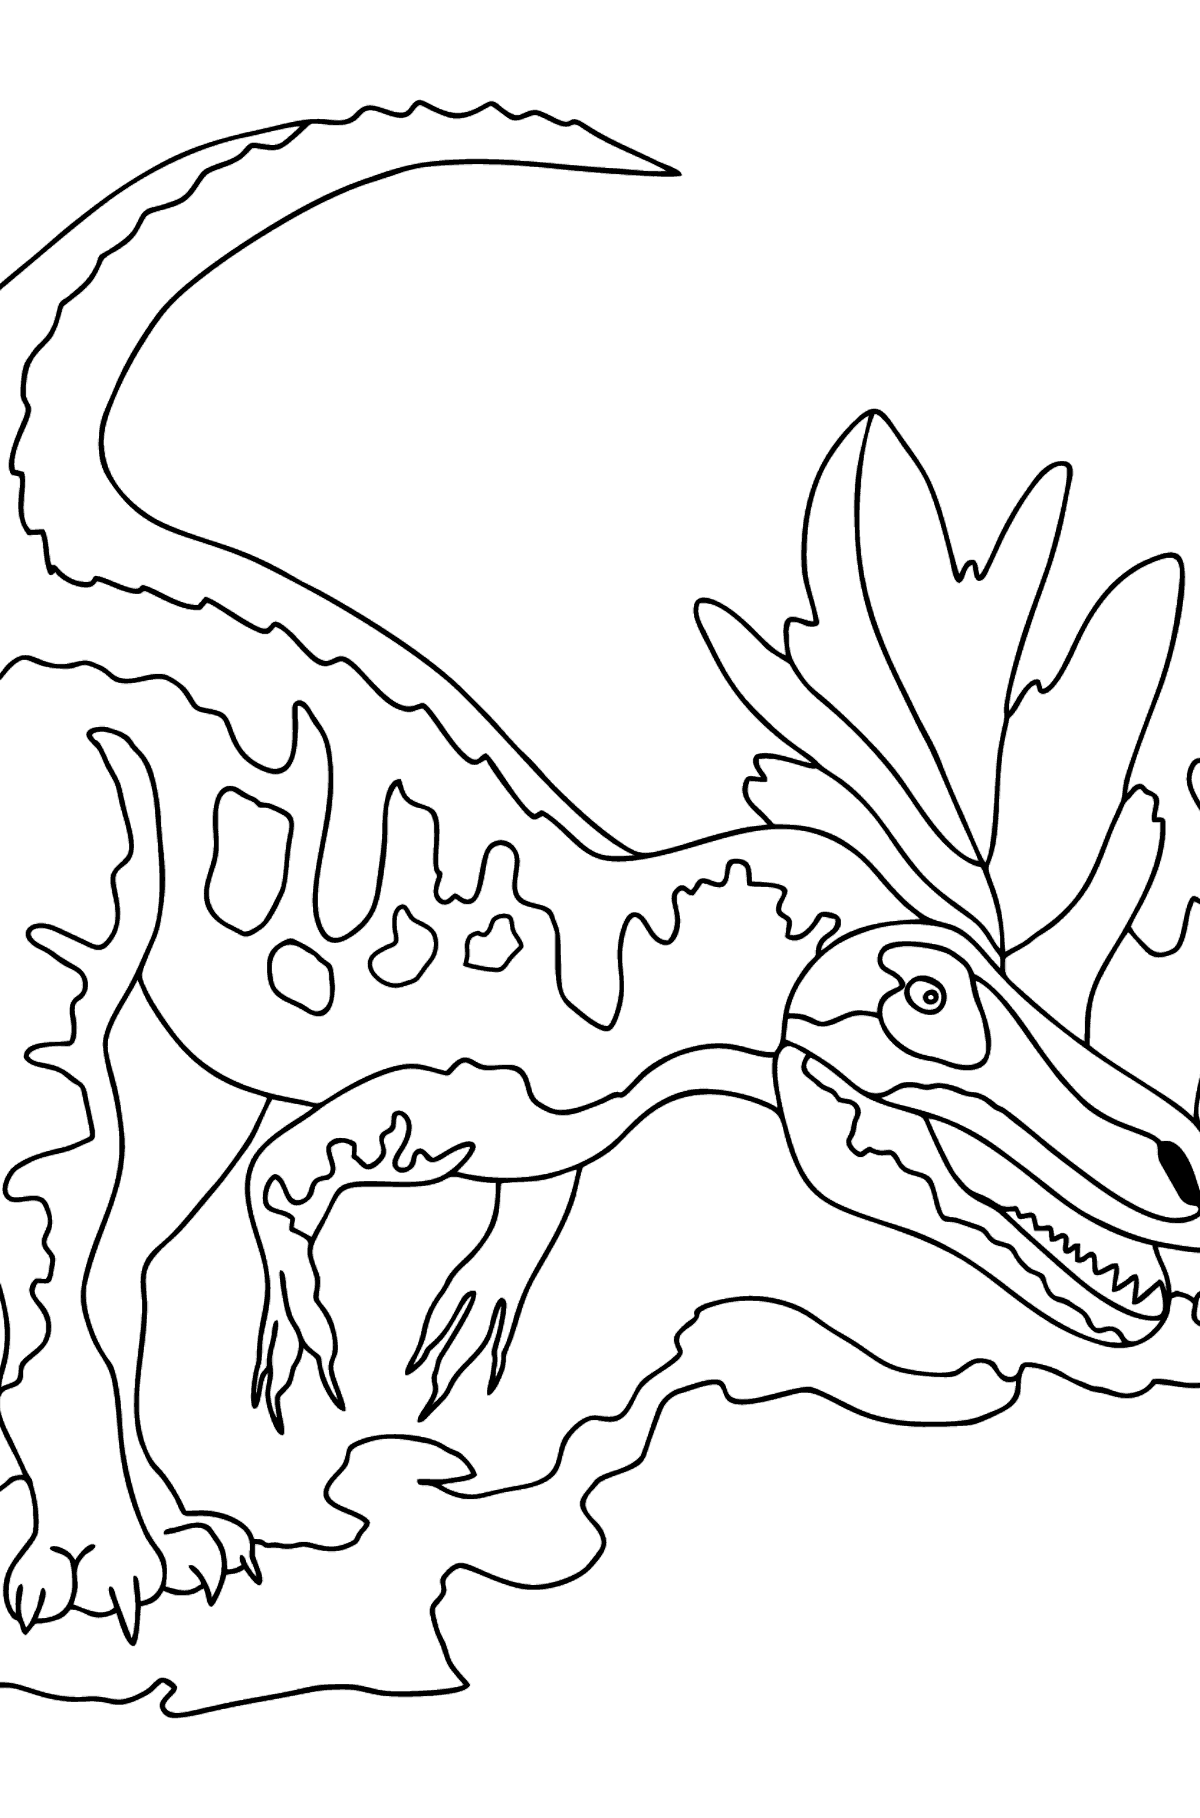 Dibujo para colorear de alosaurio (difícil) - Dibujos para Colorear para Niños